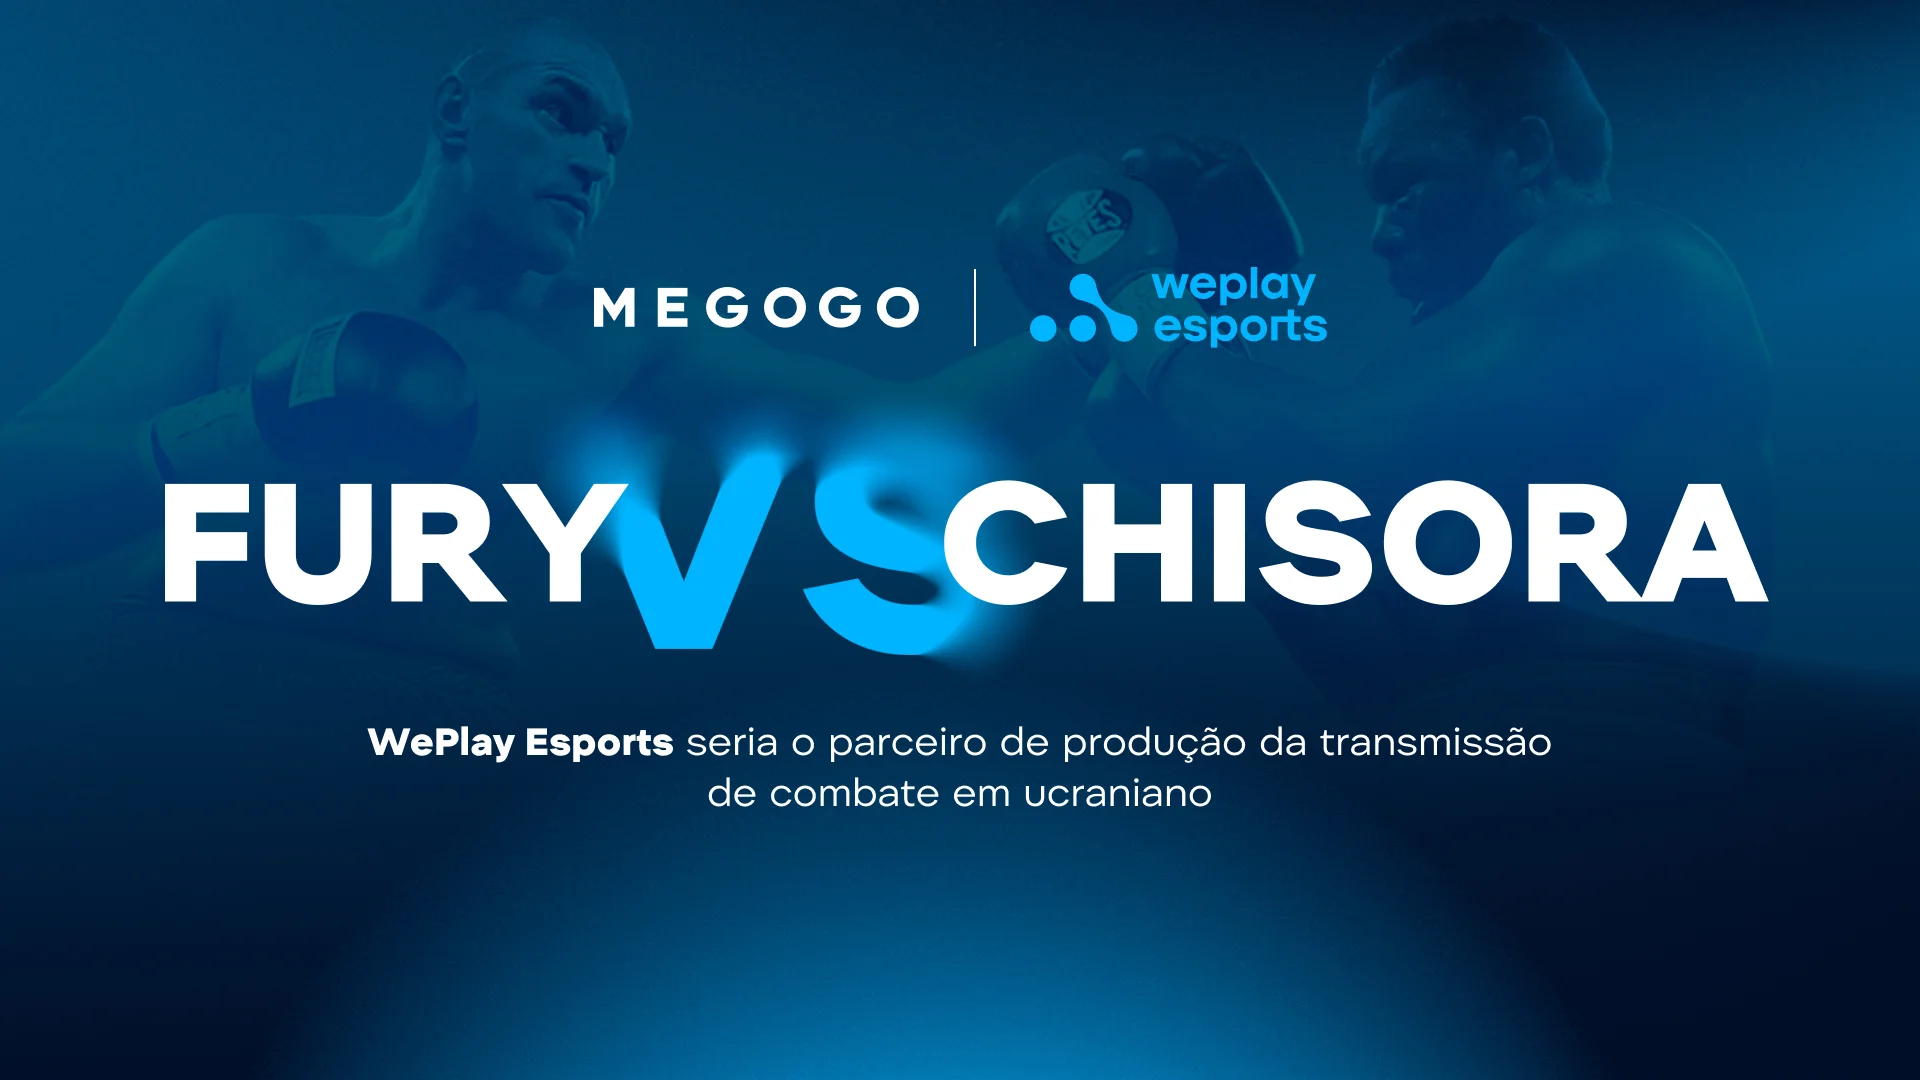 WePlay Esports seria o parceiro de produção da transmissão de combate entre Fury e Chisora em ucraniano no MEGOGO. Imagem: WePlay Holding